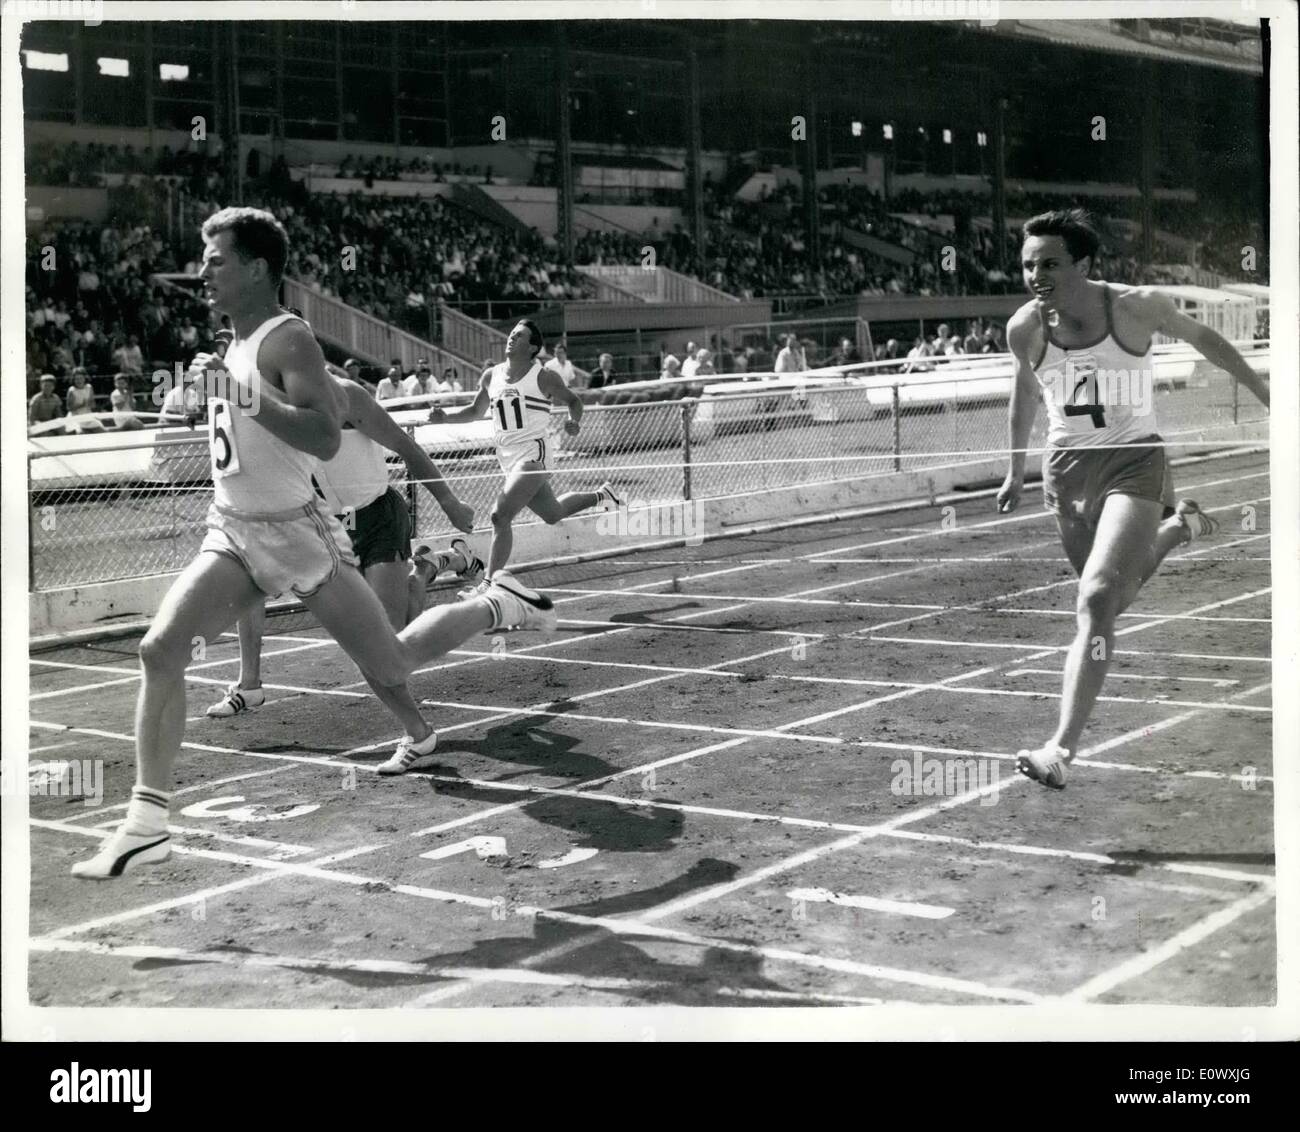 08 août, 1964 - Robbie Brightwell gagne 200 mètres event International athletics à White City. Photo montre Robbie Brightwell (n°5) remporte le 200 mètres hommes à White City cet après-midi à partir de A. Zielinski de Pologne - avec Peter Radford (10) à la troisième place. Banque D'Images